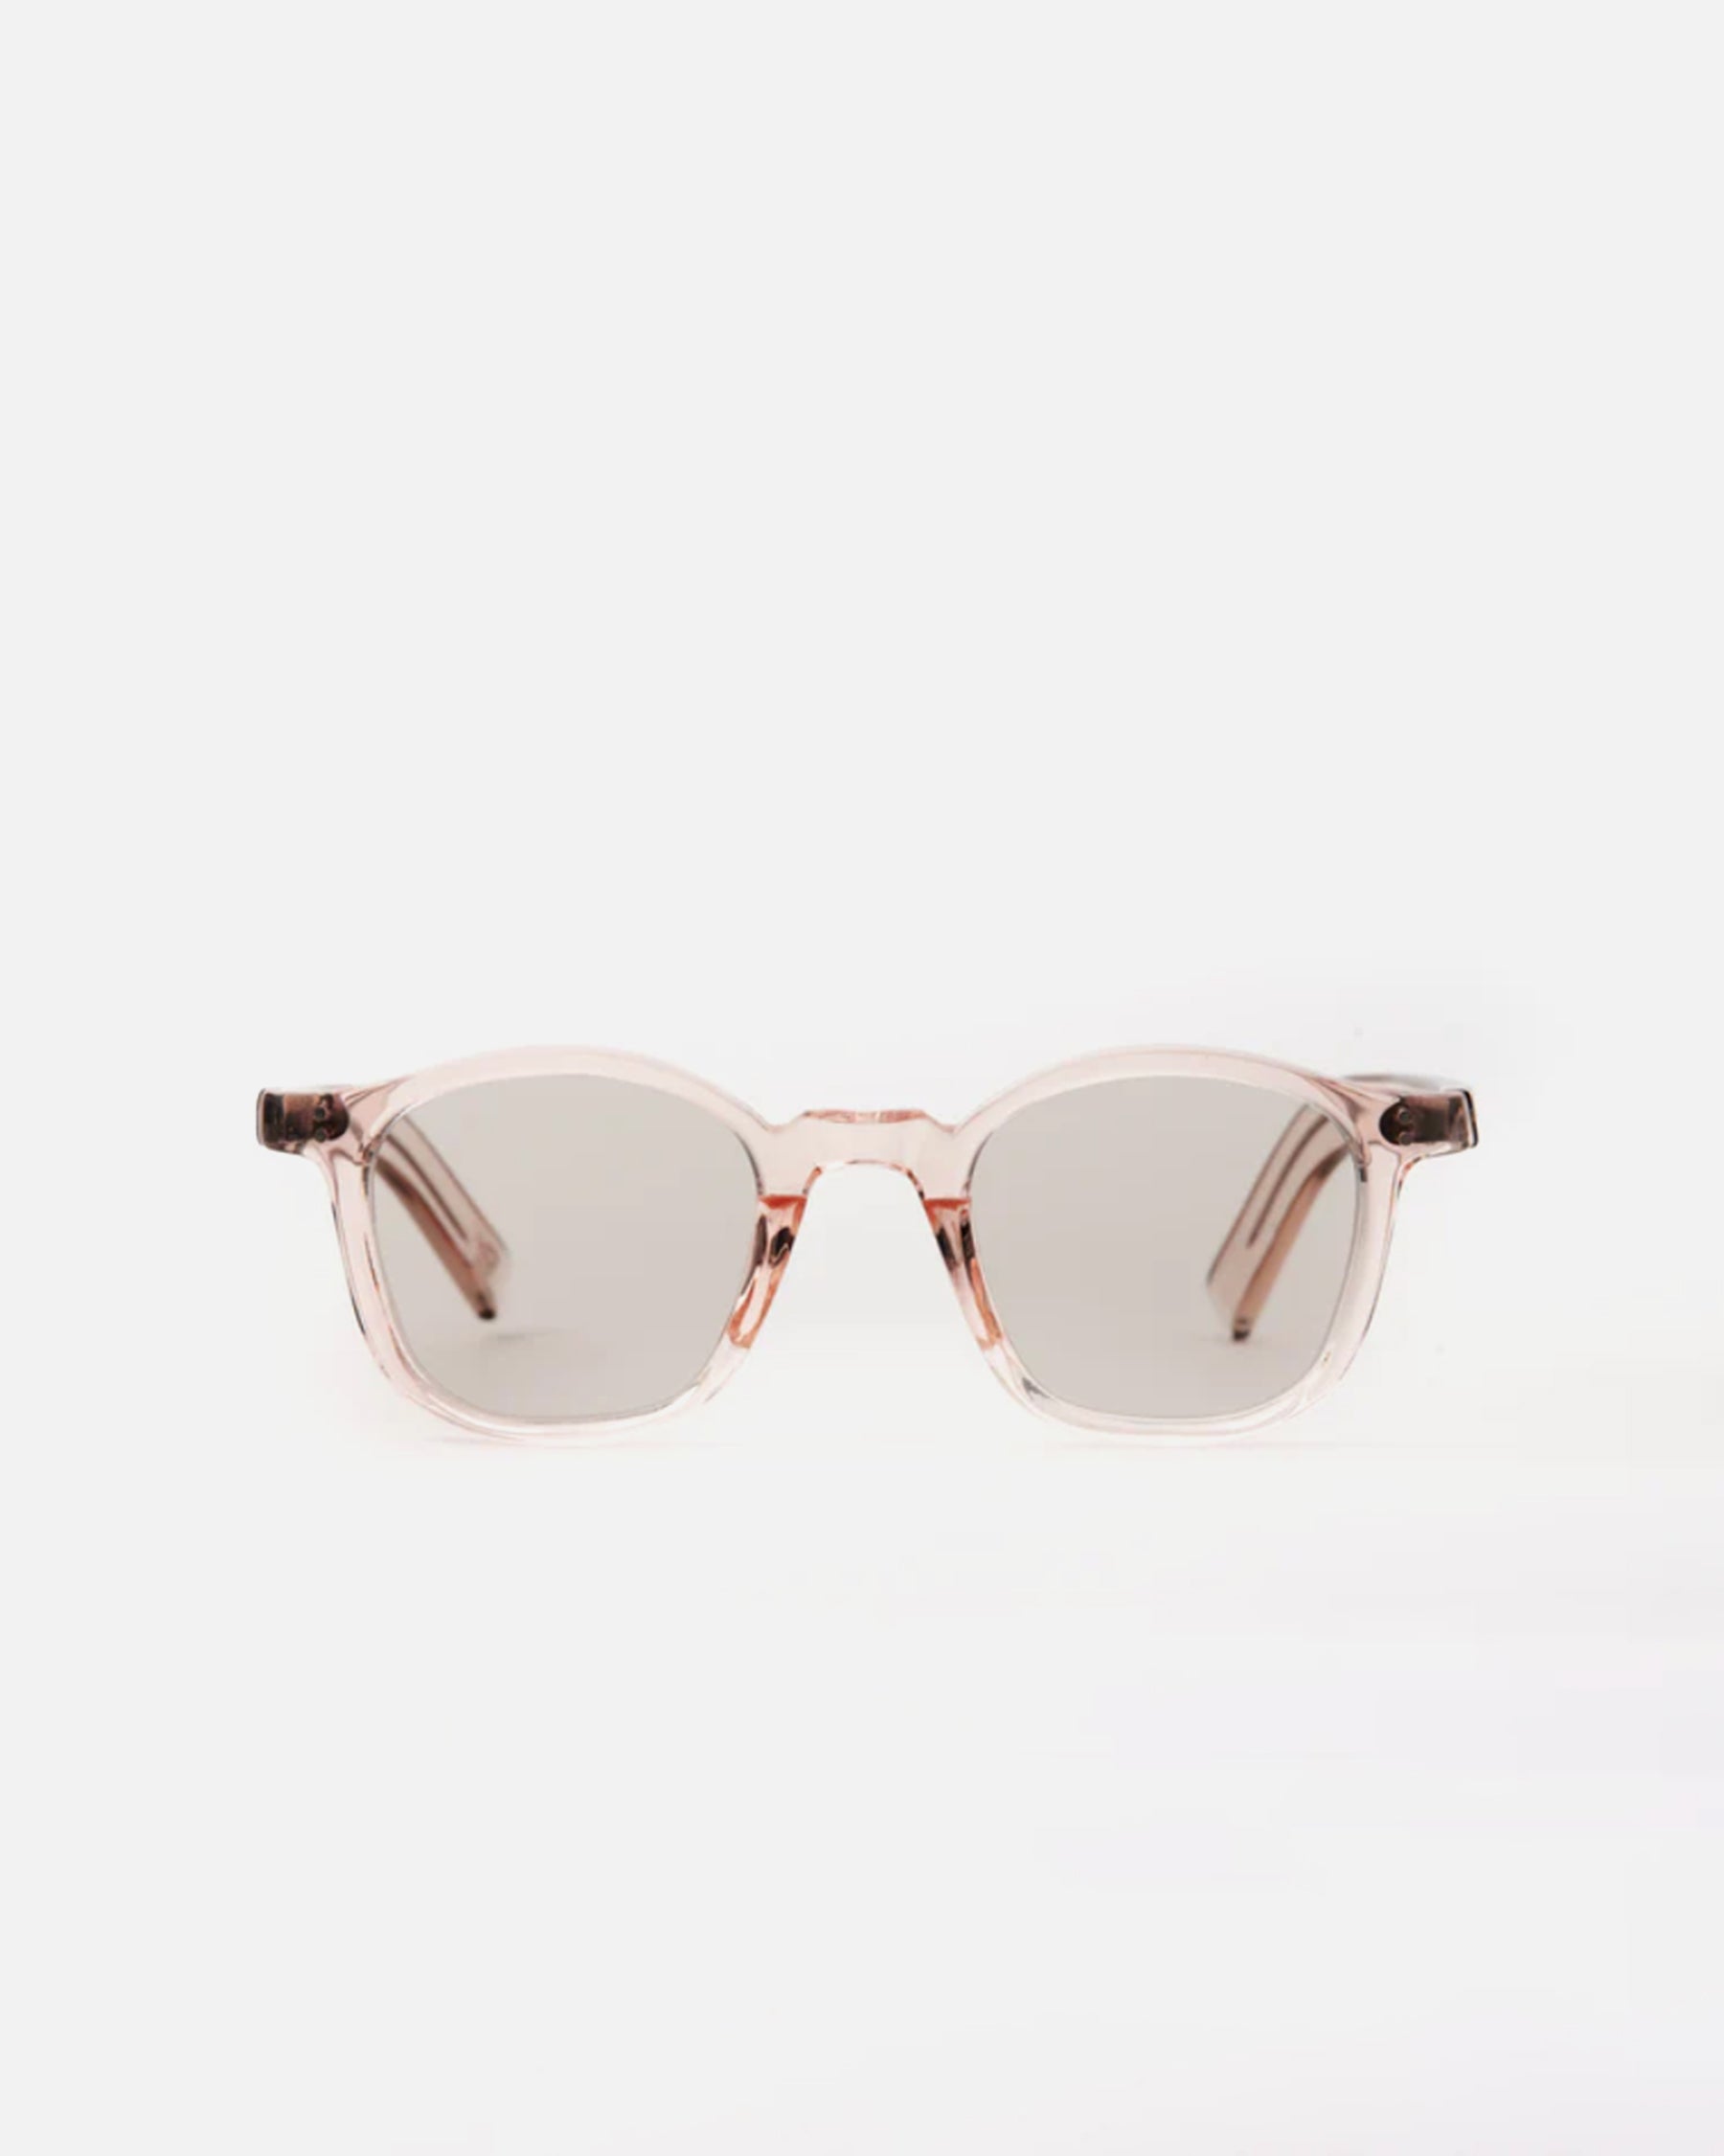 gp-01 Sunglasses Rose / Lens: Brown